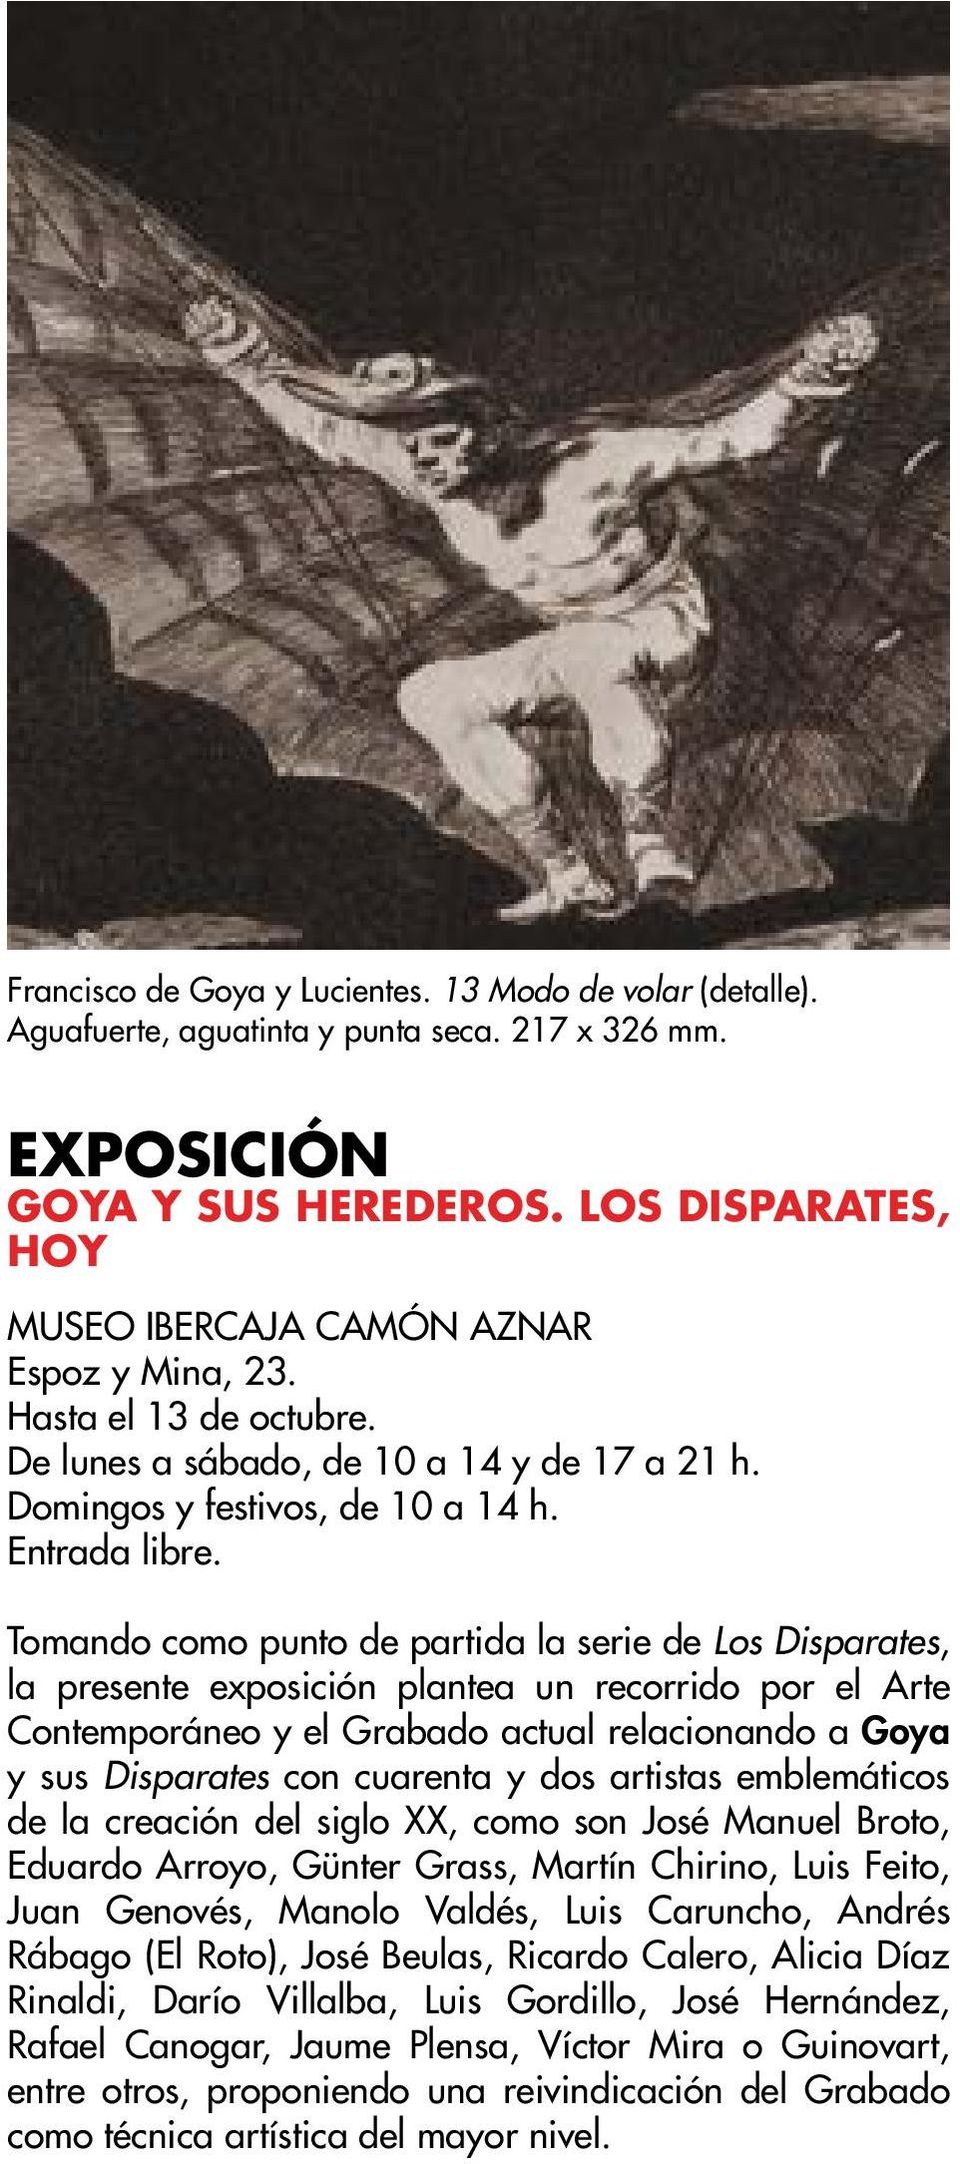 Tomando como punto de partida la serie de Los Disparates, la presente exposición plantea un recorrido por el Arte Contemporáneo y el Grabado actual relacionando a Goya y sus Disparates con cuarenta y